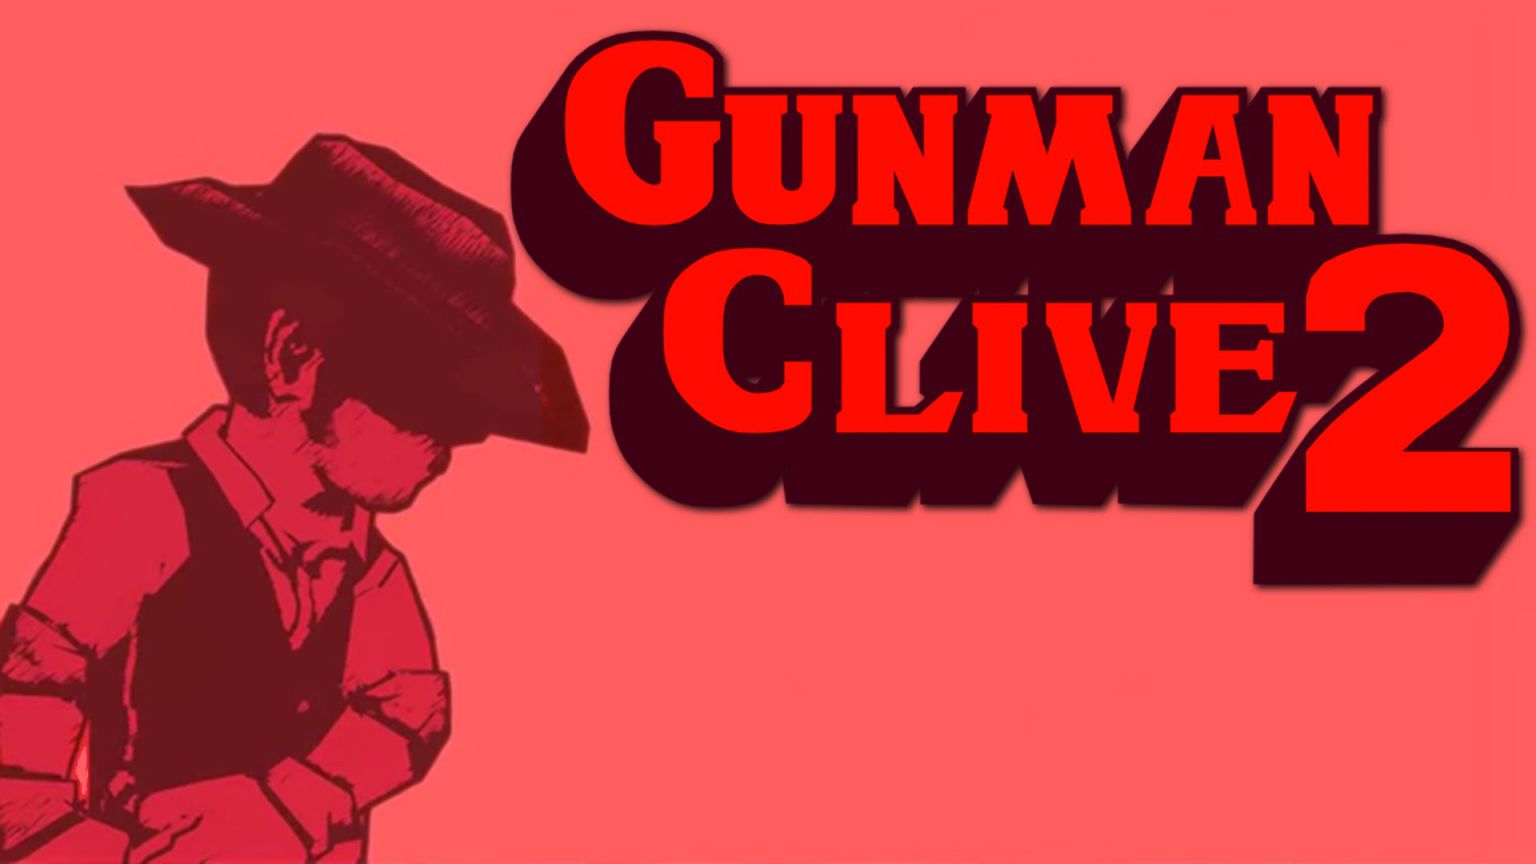 Gunman clive 2